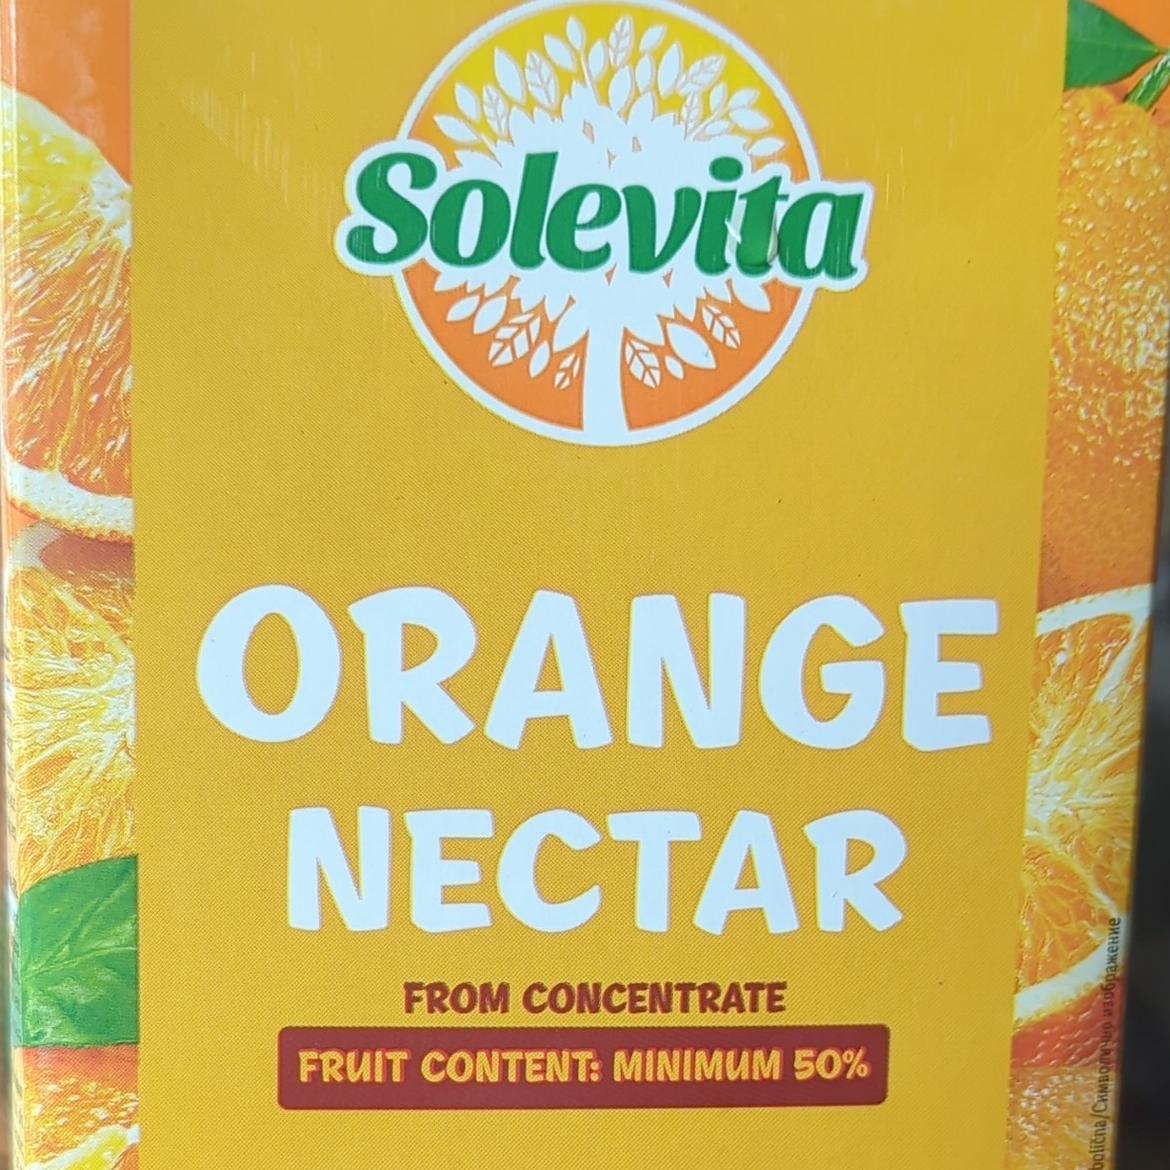 Képek - Orange nectar 50% sűrítményből Solevita